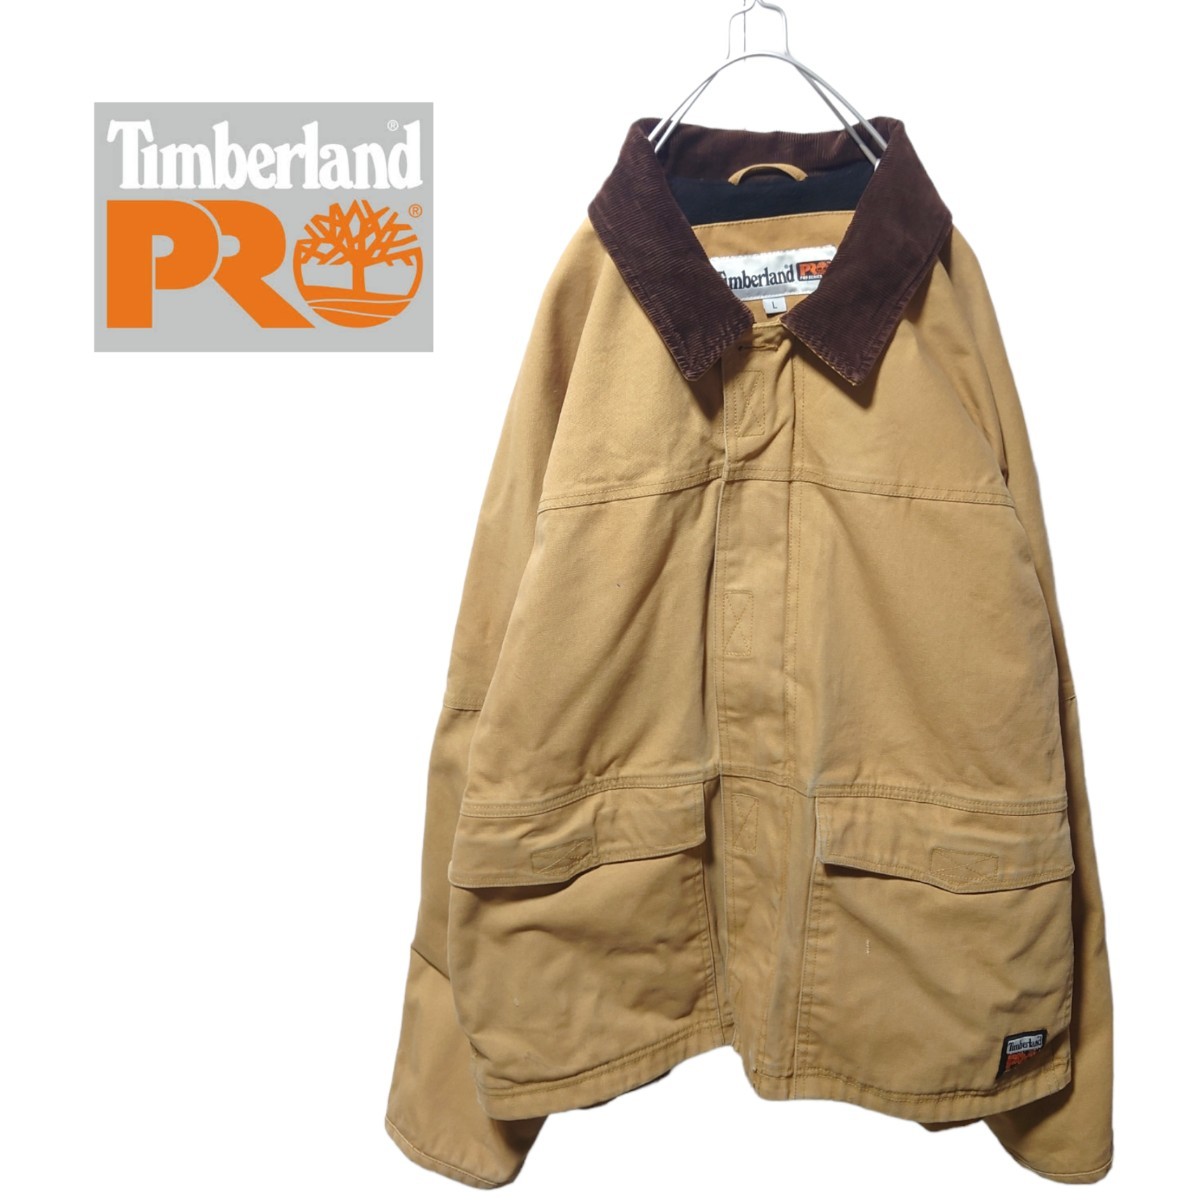 【Timberland PRO】コーデュロイ襟 ハンティングジャケット A607メンズファッション